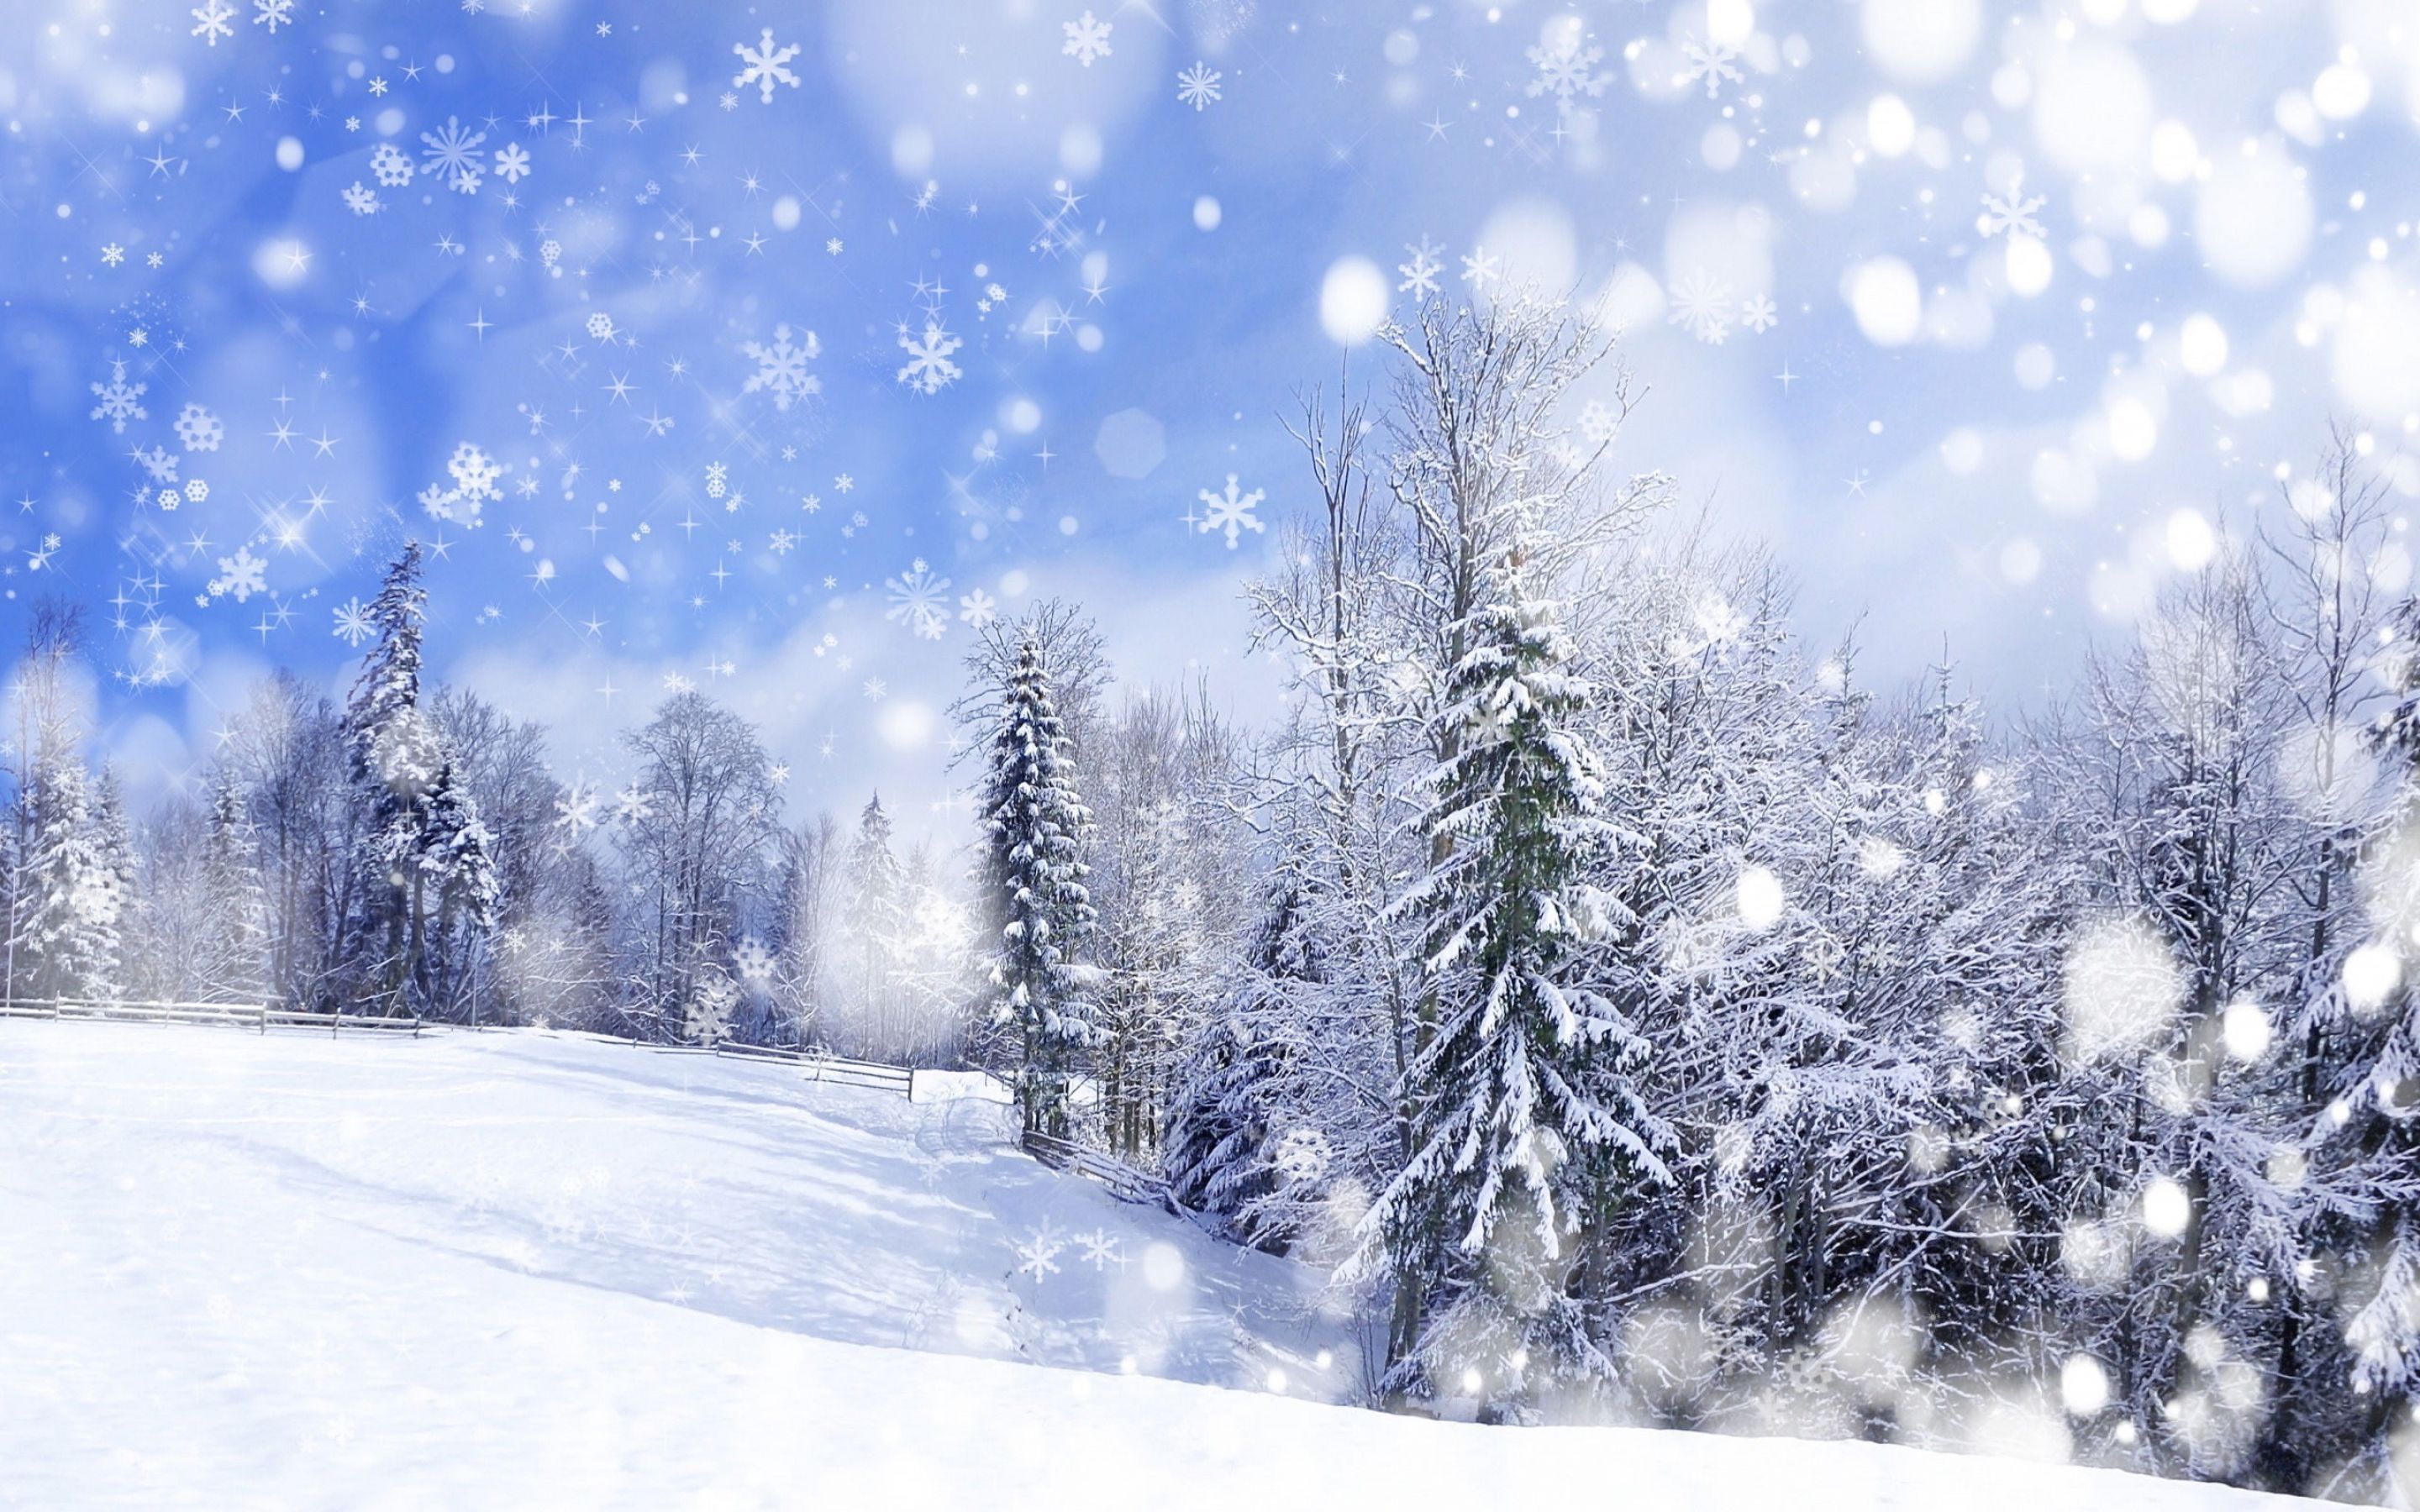 Mùa Đông Tuyết Rơi Phong Cảnh - Ảnh miễn phí trên Pixabay - Pixabay